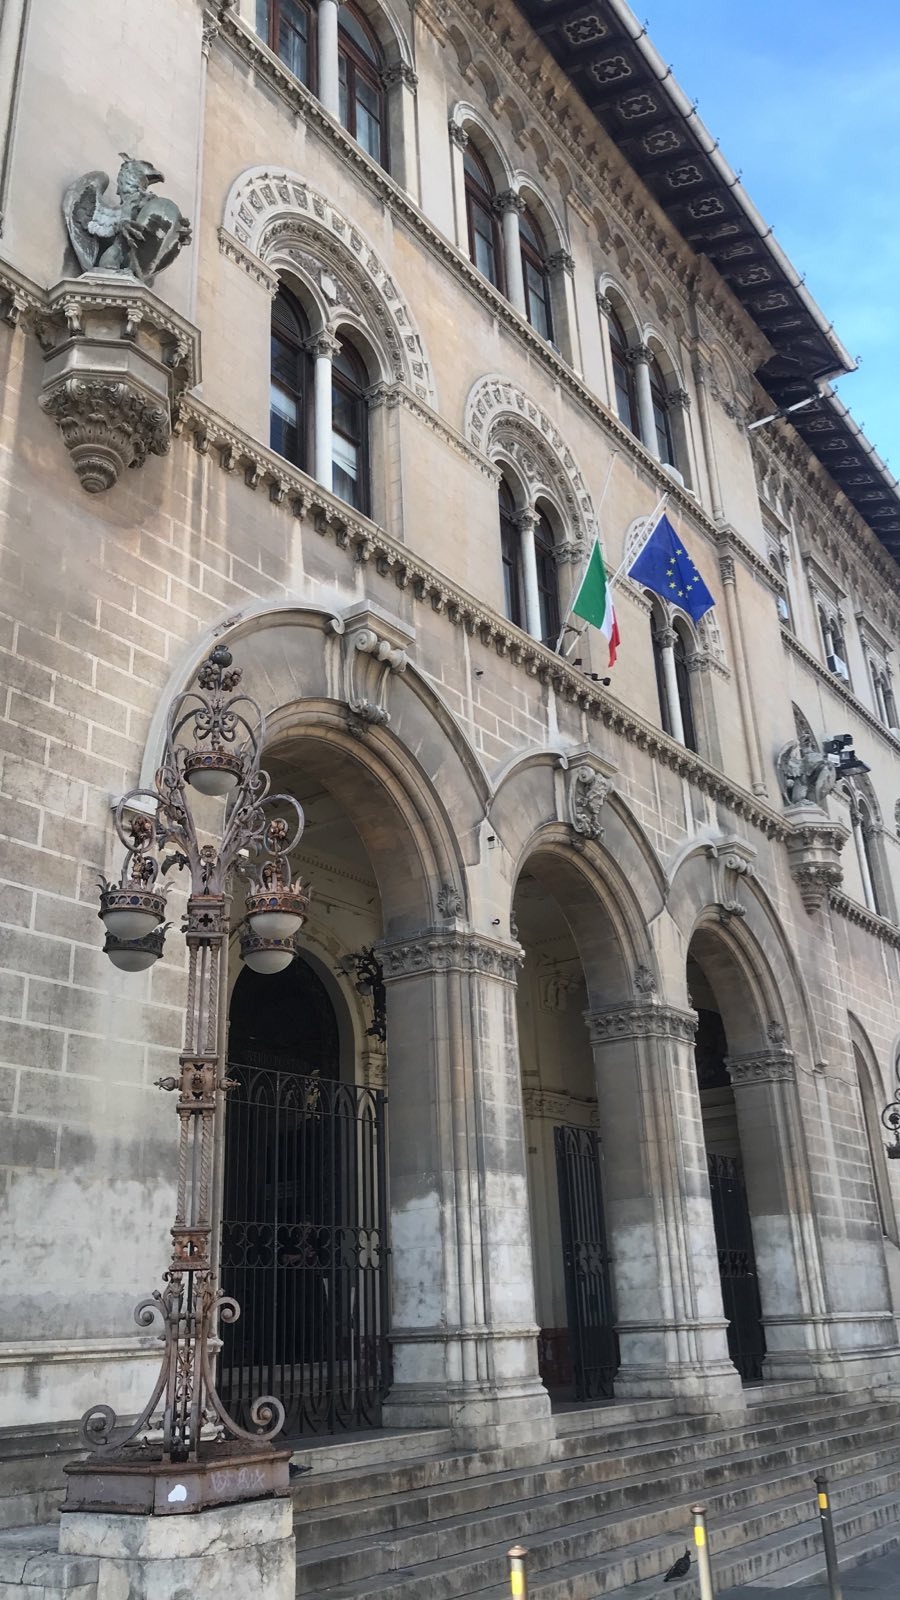 Post office Perugia